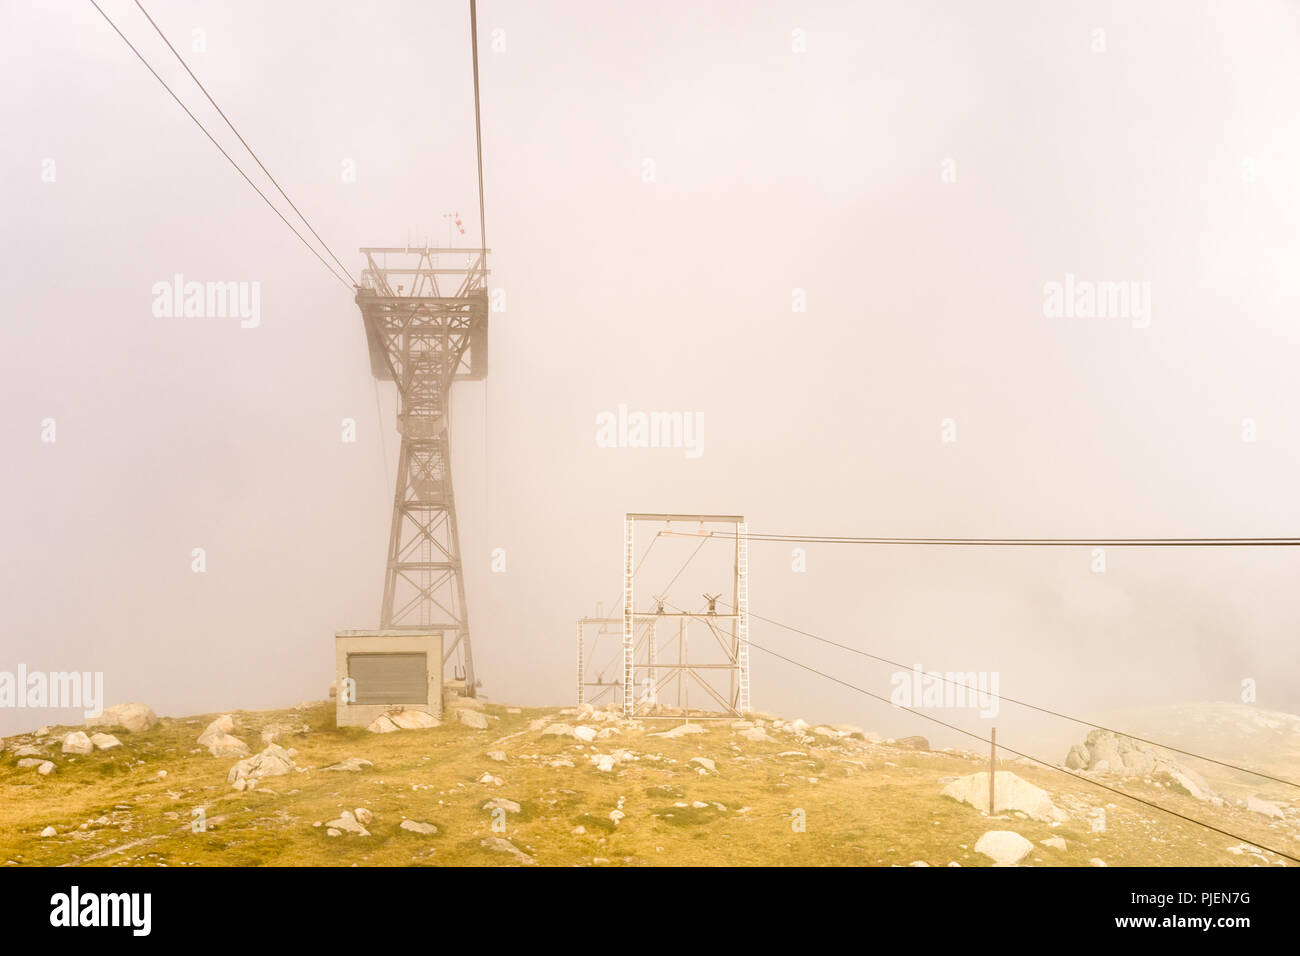 Um Seilbahn zum Aussichtspunkt am Gipfel des Mont Blanc Berg Szene, höchster Gipfel Europas, in Chamoix Mont-Blanc Stadt mit viel Nebel. Stockfoto